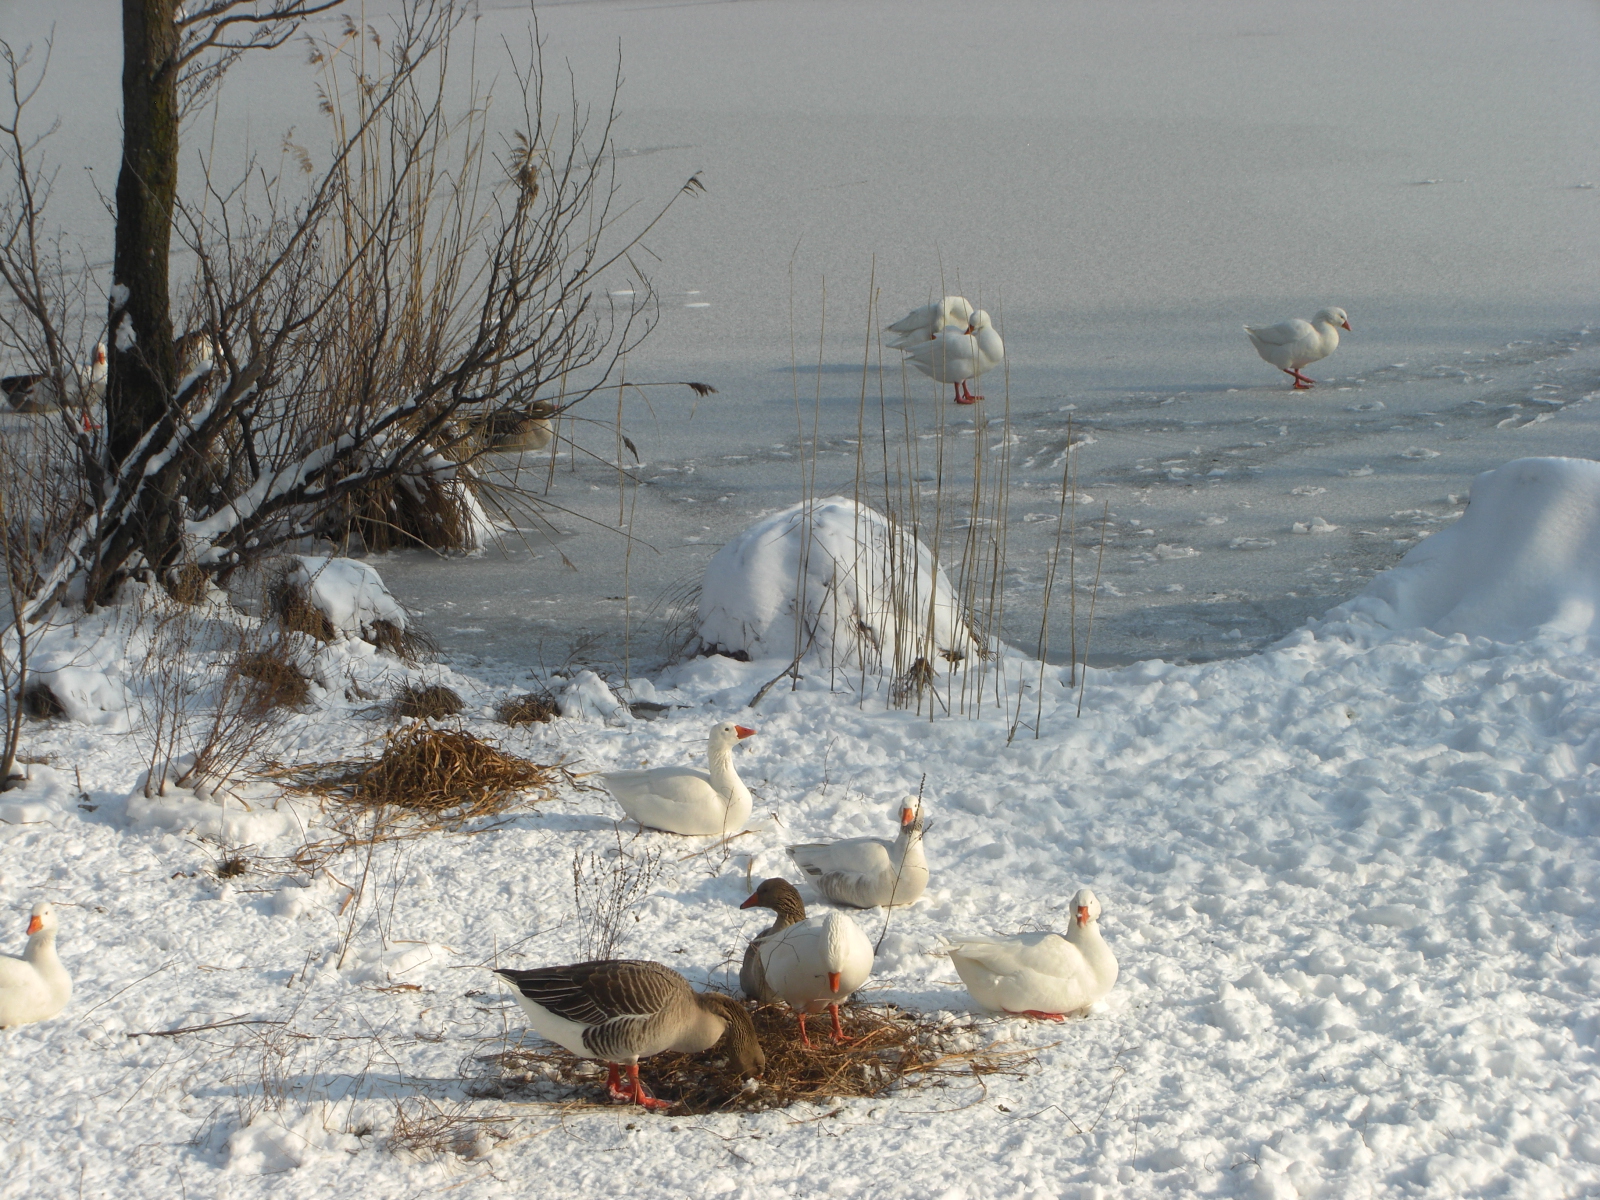 geese on the frozen lake (Segrino)...